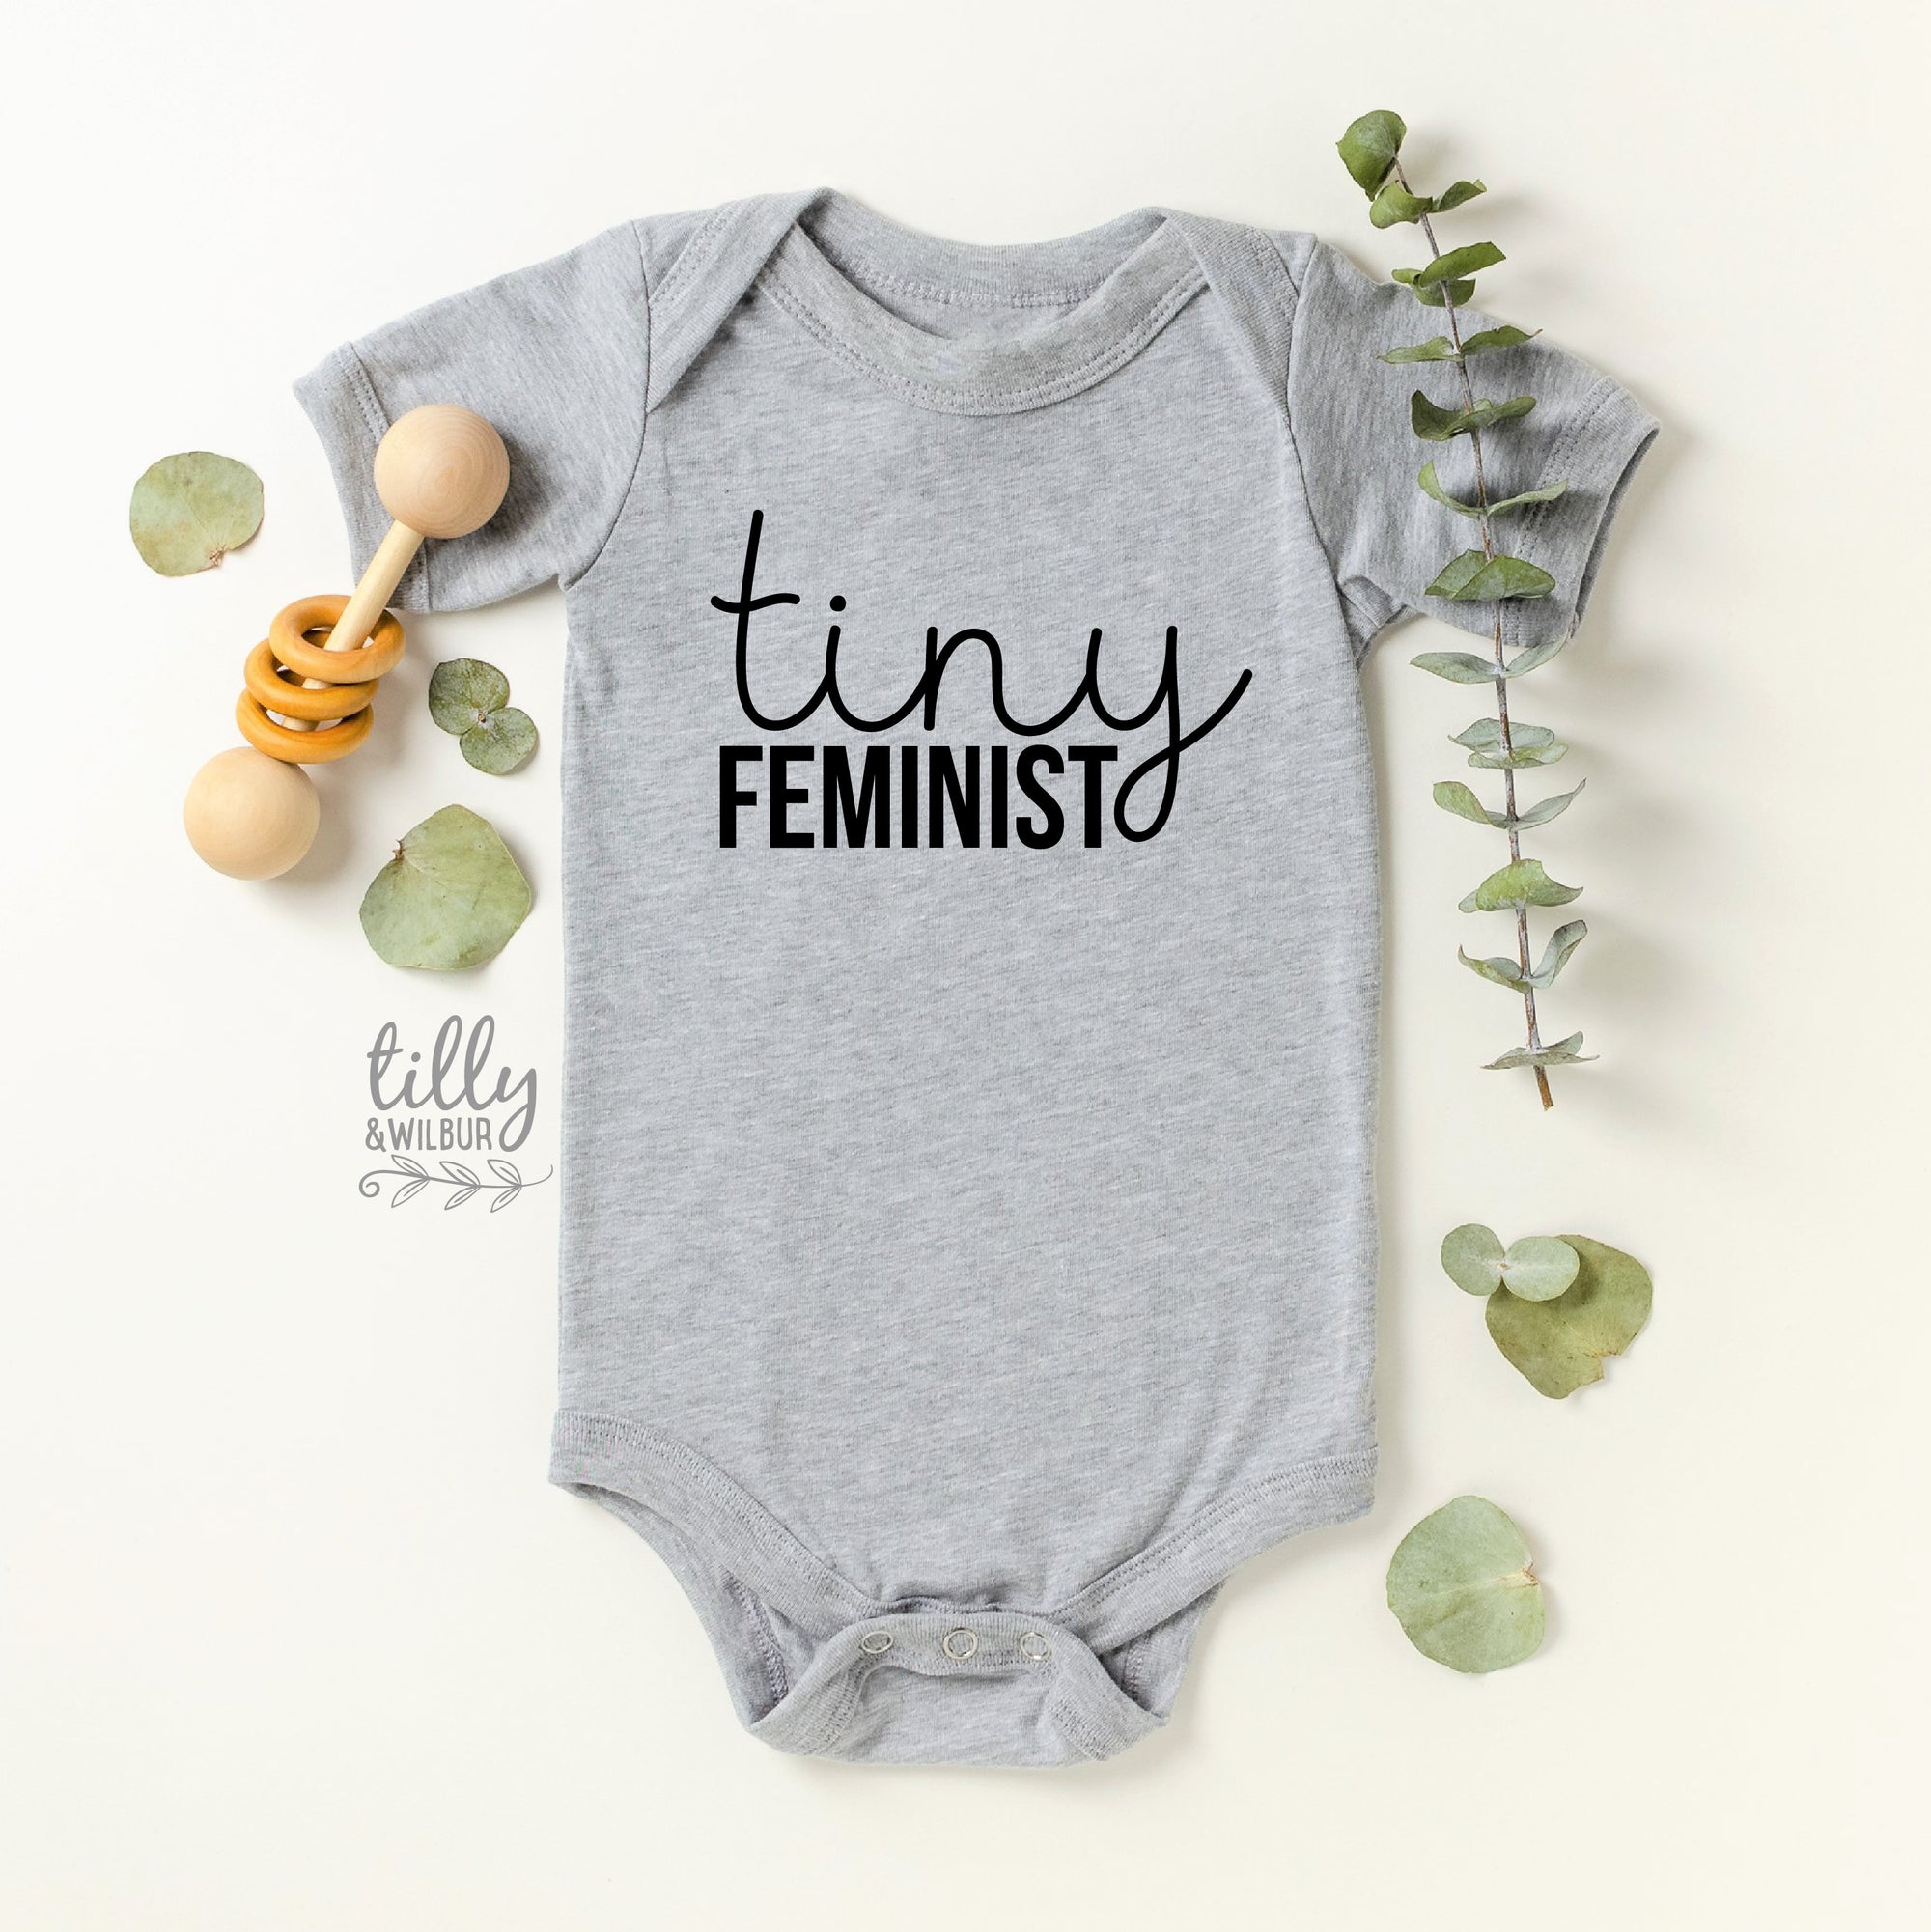 Tiny Feminist Baby Bodysuit, Feminist Baby Gift, Strong Women, Feminism, Girls Rule The World, Girl Power, Little Feminist, Funny Baby Gift